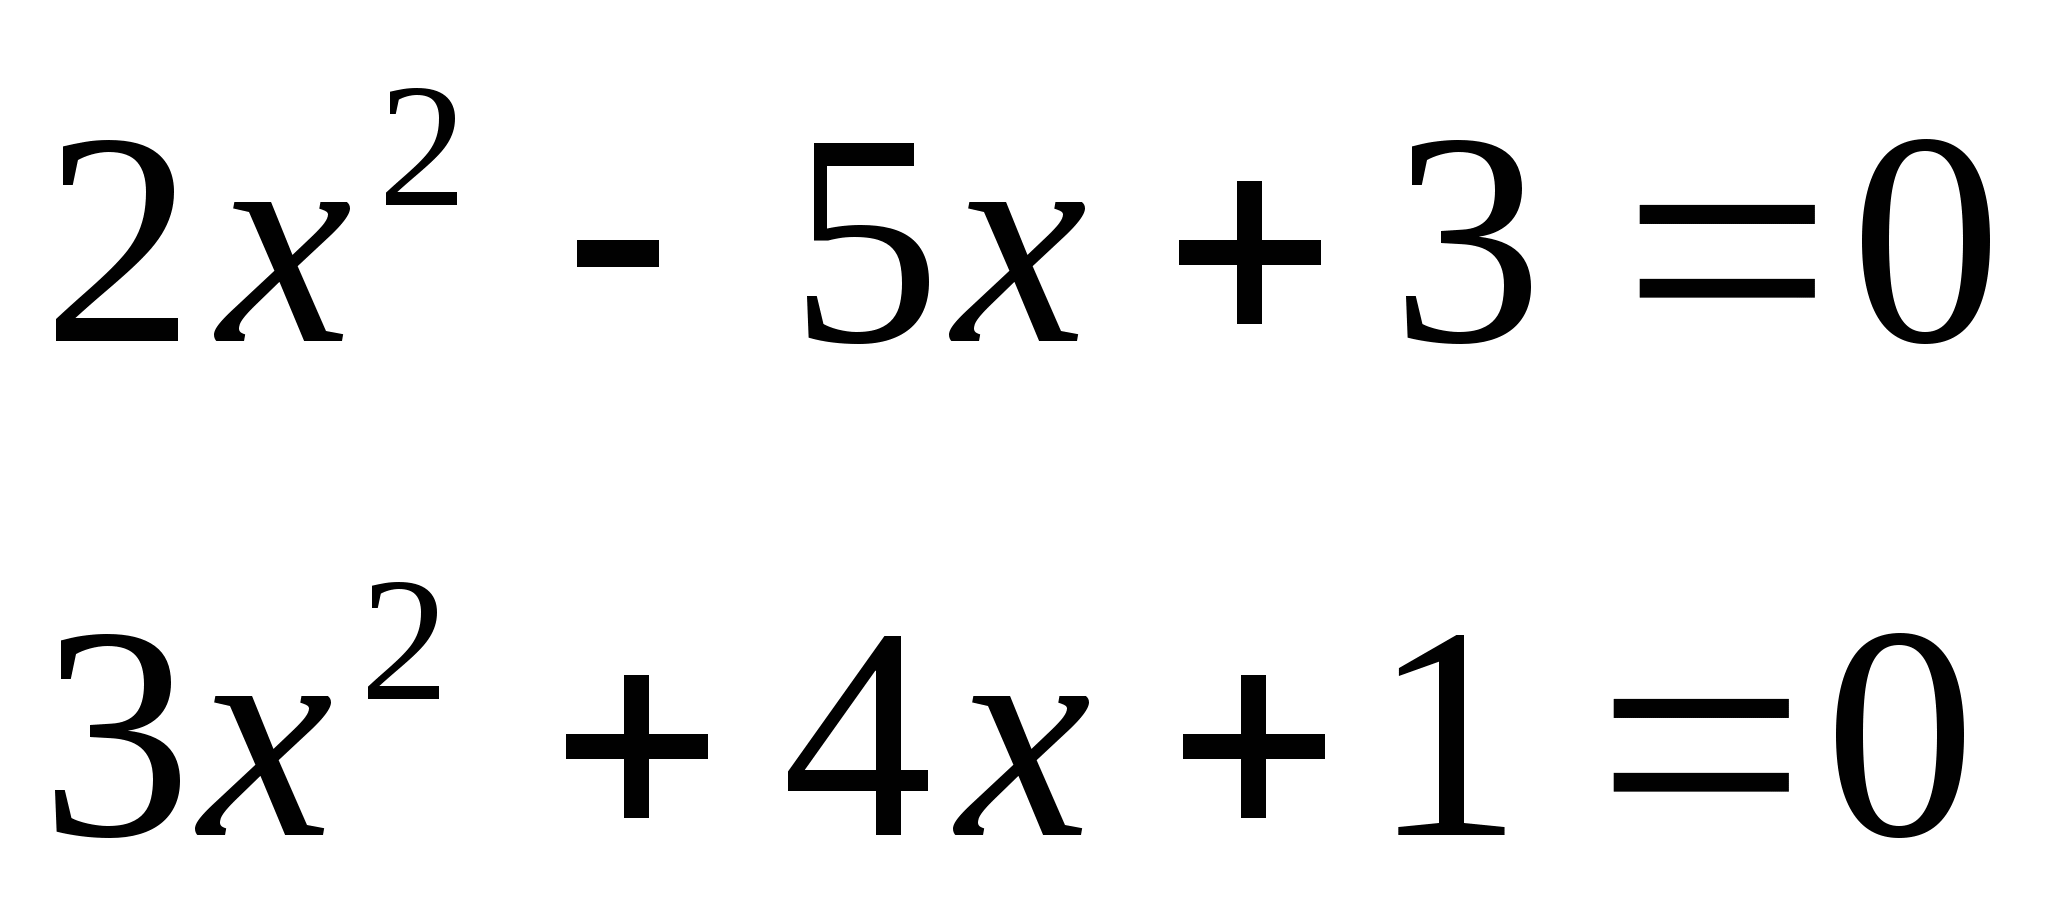 Урок по алгебре для 8 класса Квадратные уравнения